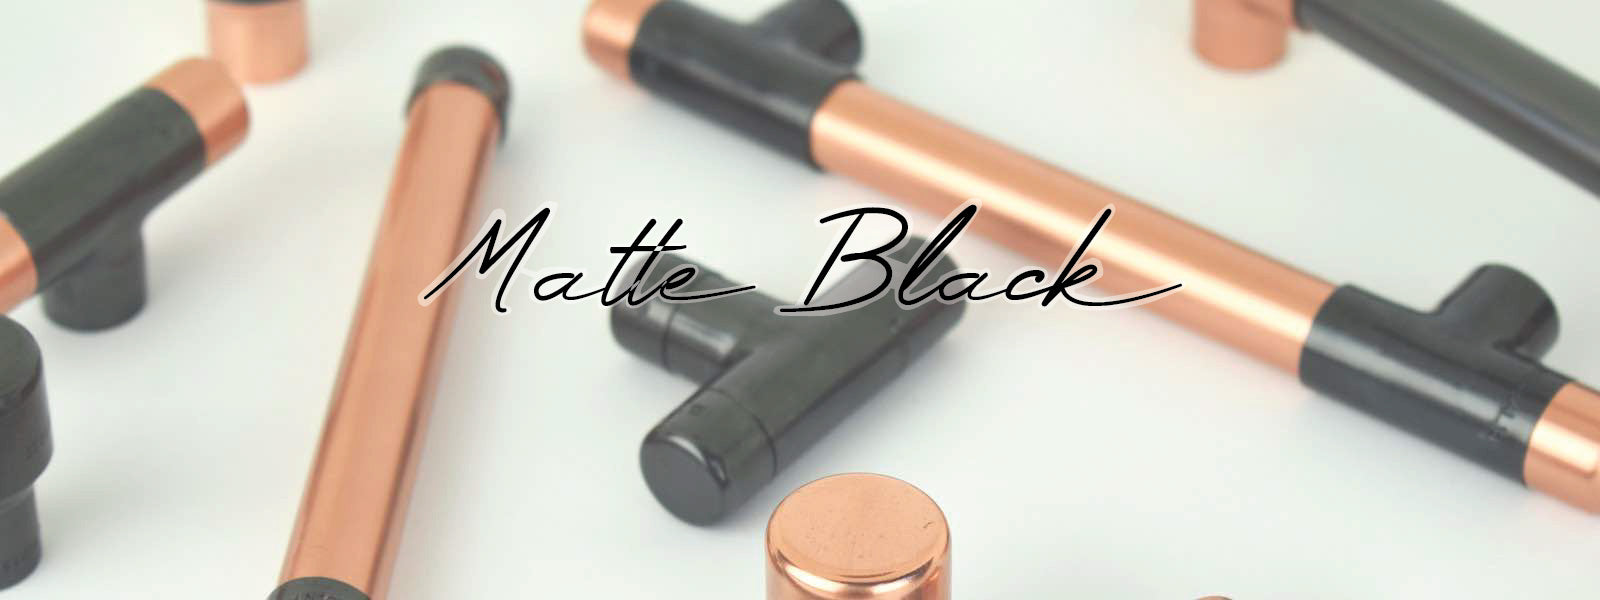 Matt Black Copper Handles and Kitchen Hardware